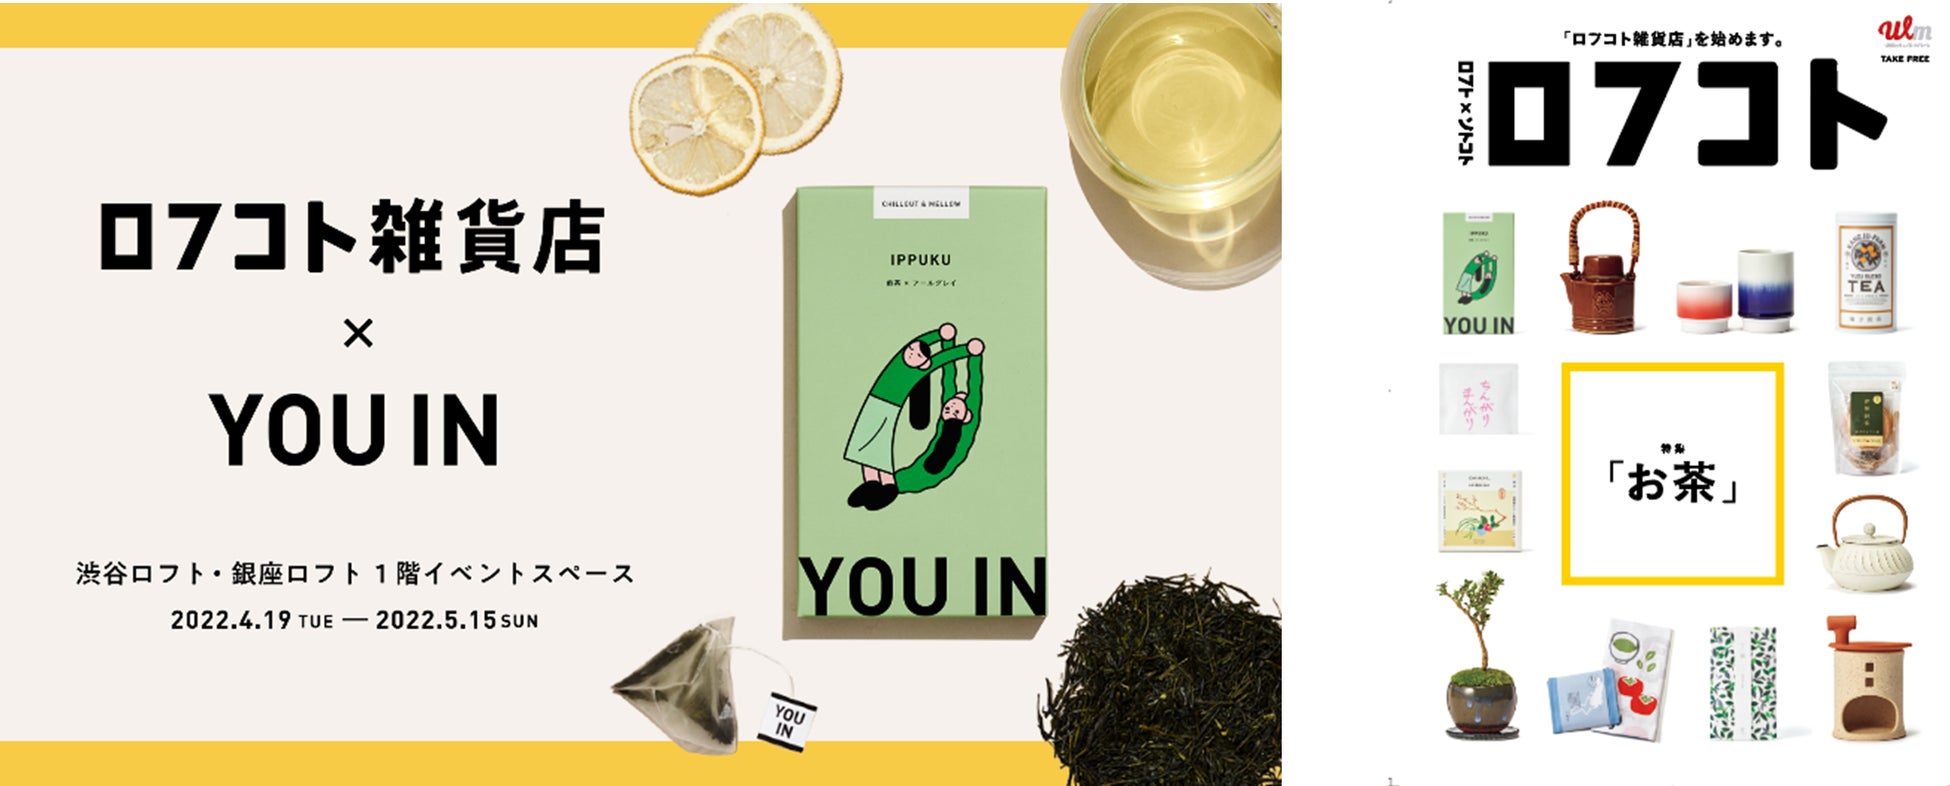 「日本のローカルと食、サステナビリティ」をキーワードにしたプロジェクト、「ロフコト雑貨店」にムードペアリングティー「YOU IN」が登場！